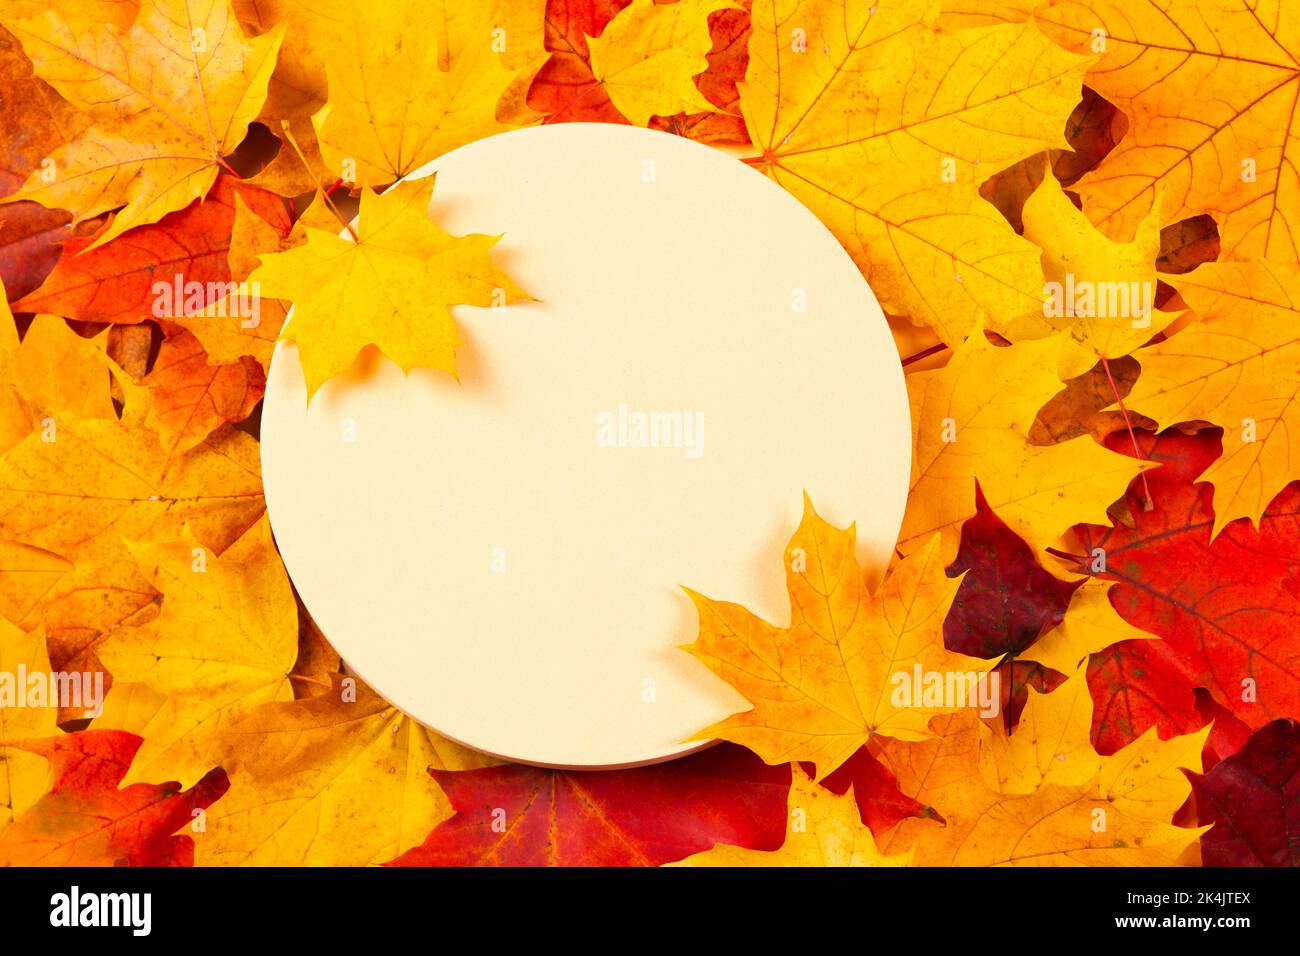 Geometrischer runder Podium-Plattformständer für kosmetische Beauty-Produktpräsentation auf rotem, orangefarbenem und gelbem Herbst-Ahorn-Herbstlaub-Hintergrund. Modell Stockfoto